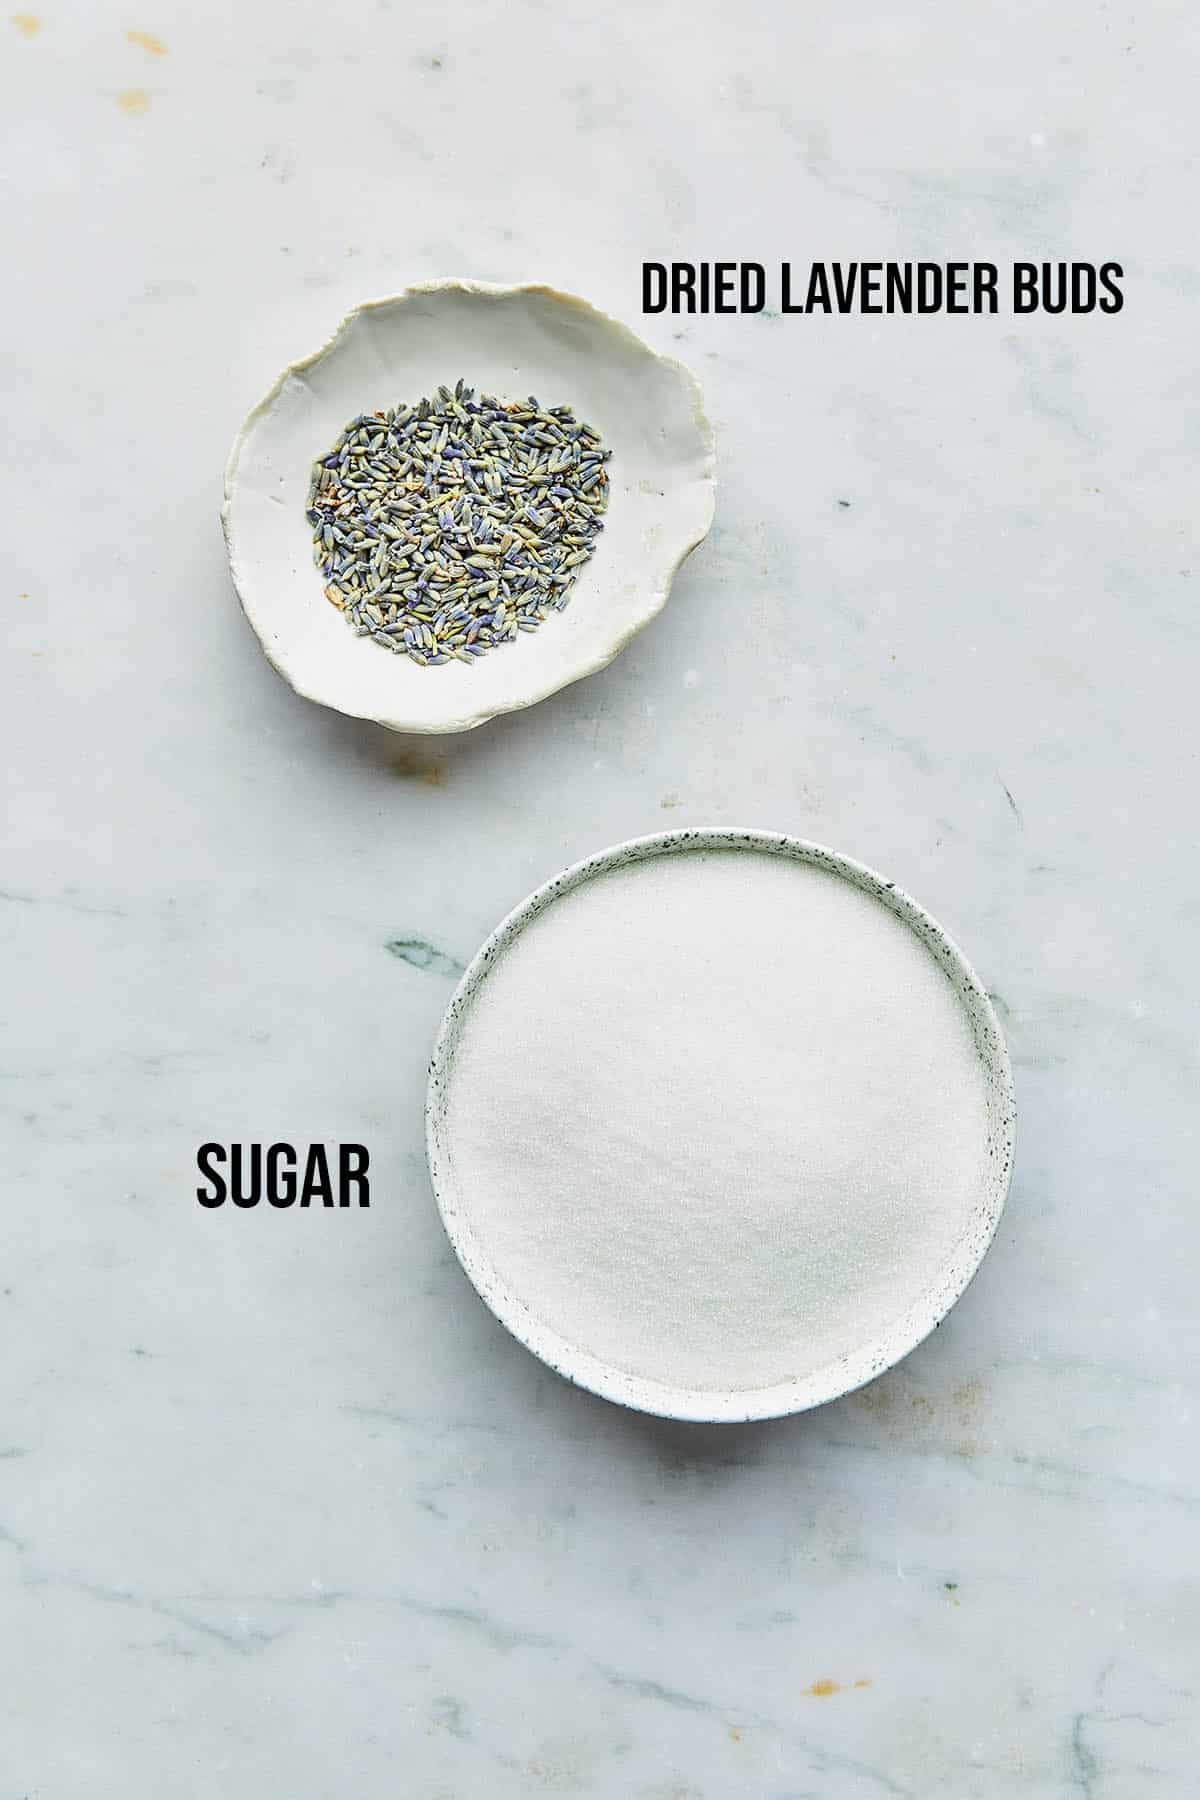 Ingredients to make lavender sugar.